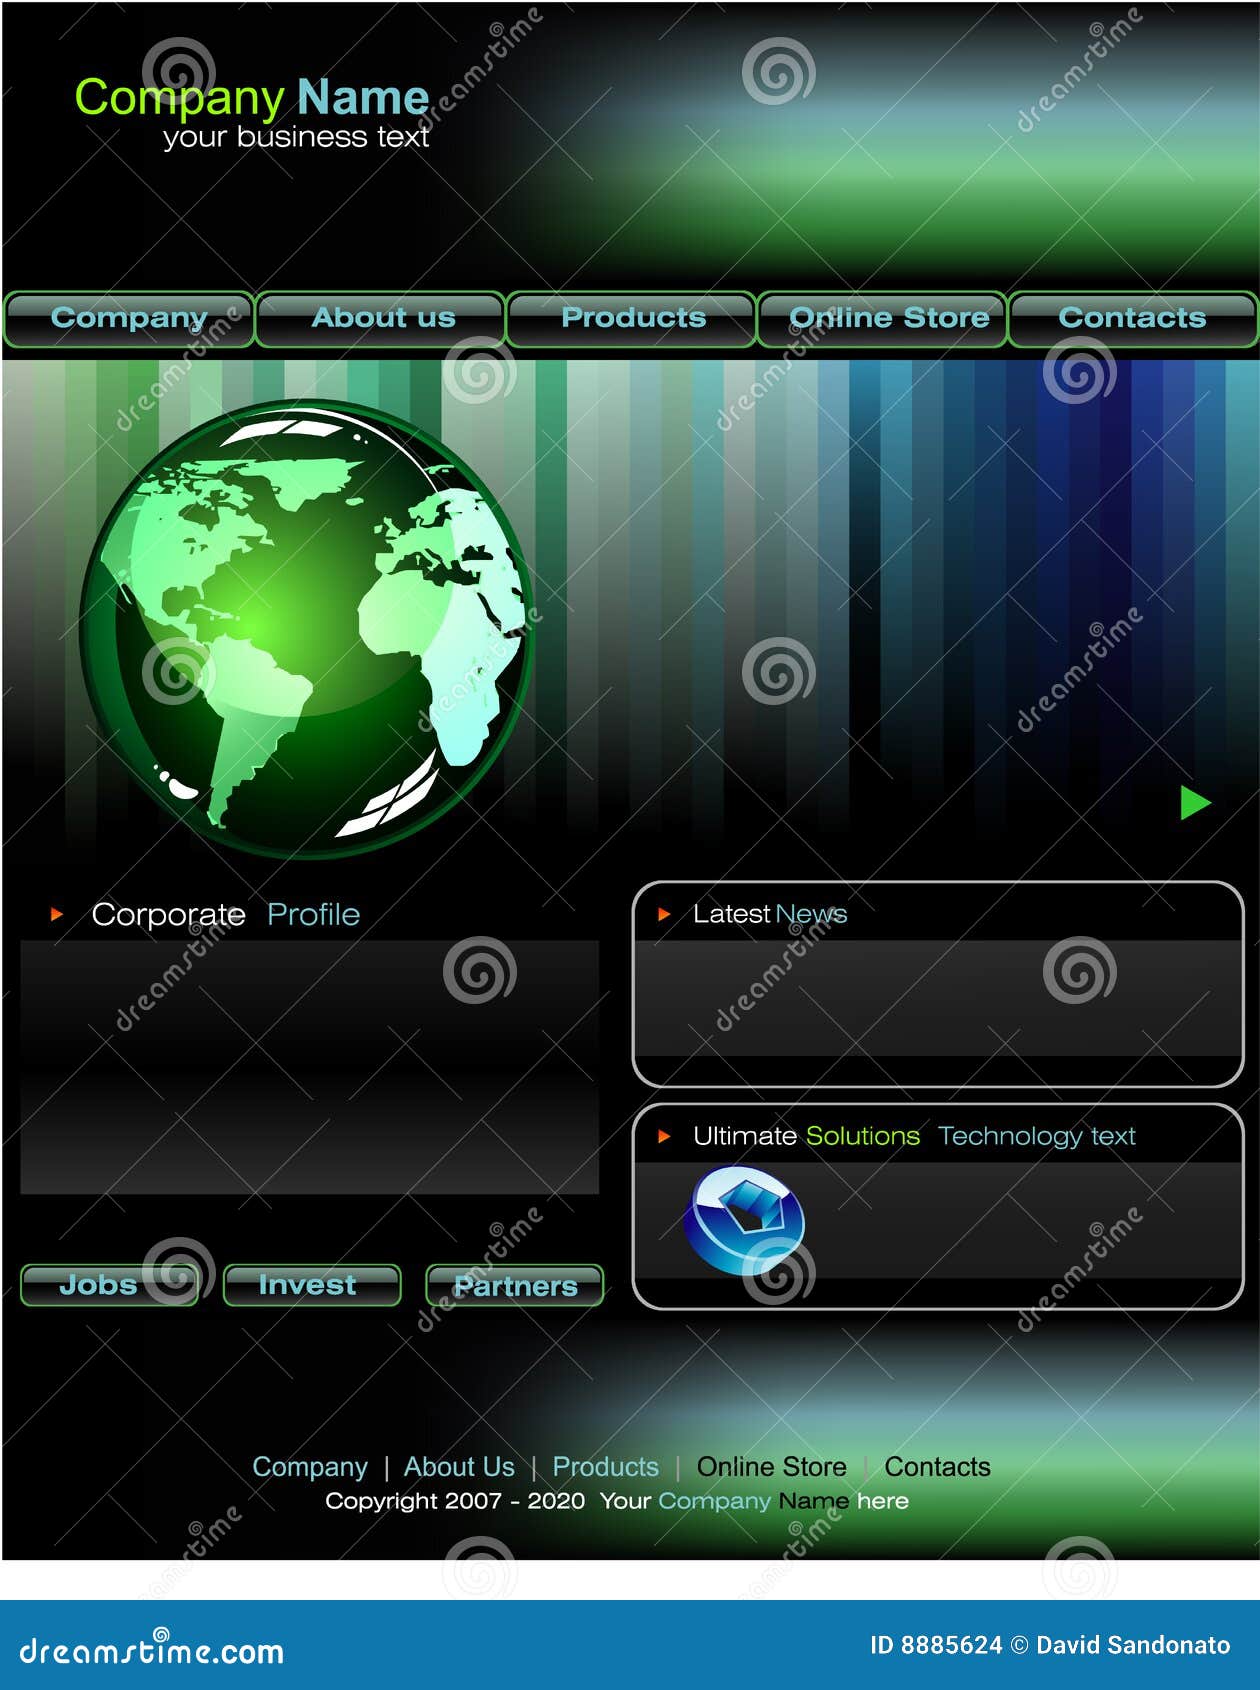 Modello di Web site di affari. Il modello fragile di Web site di affari con l'azzurro ed il verde progettano gli elementi